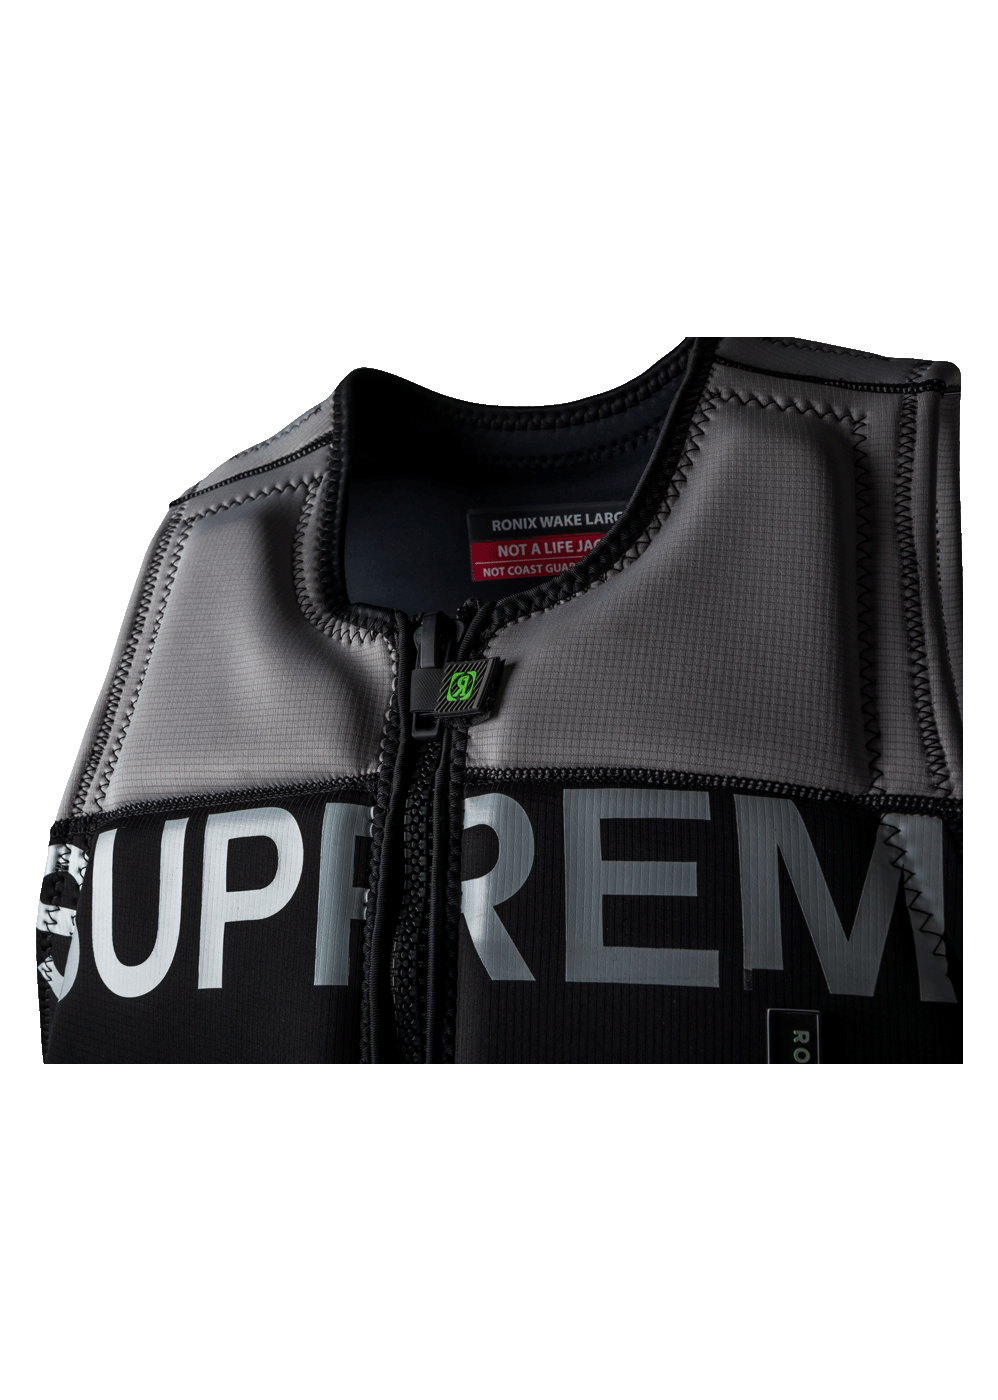 Supreme Pelle Jacket For Sale - William Jacket